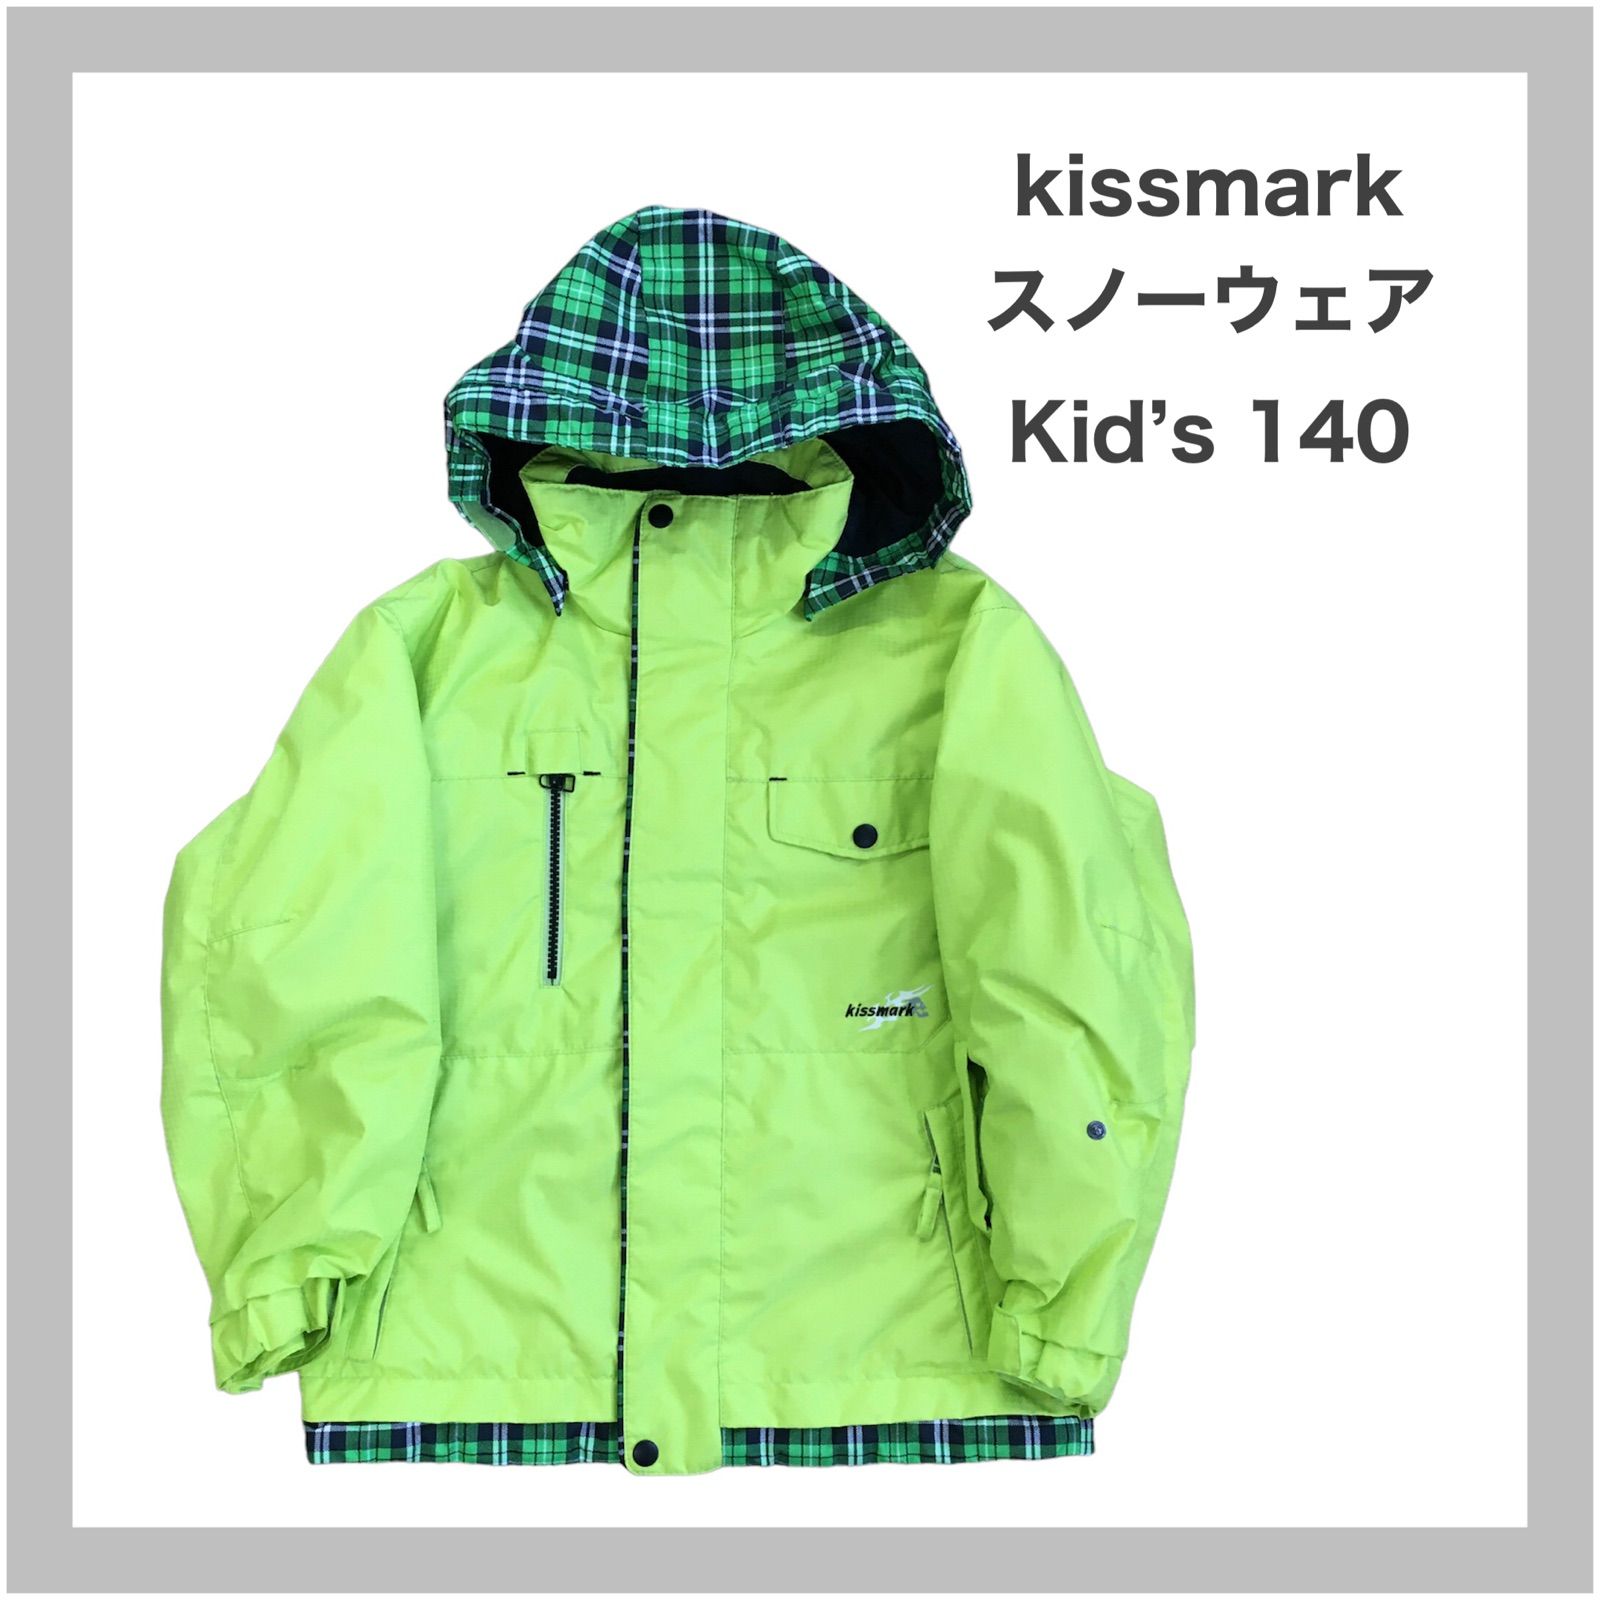 Kissmark キスマーク スノボウェア スキーウエア スノーボード 総柄 S-